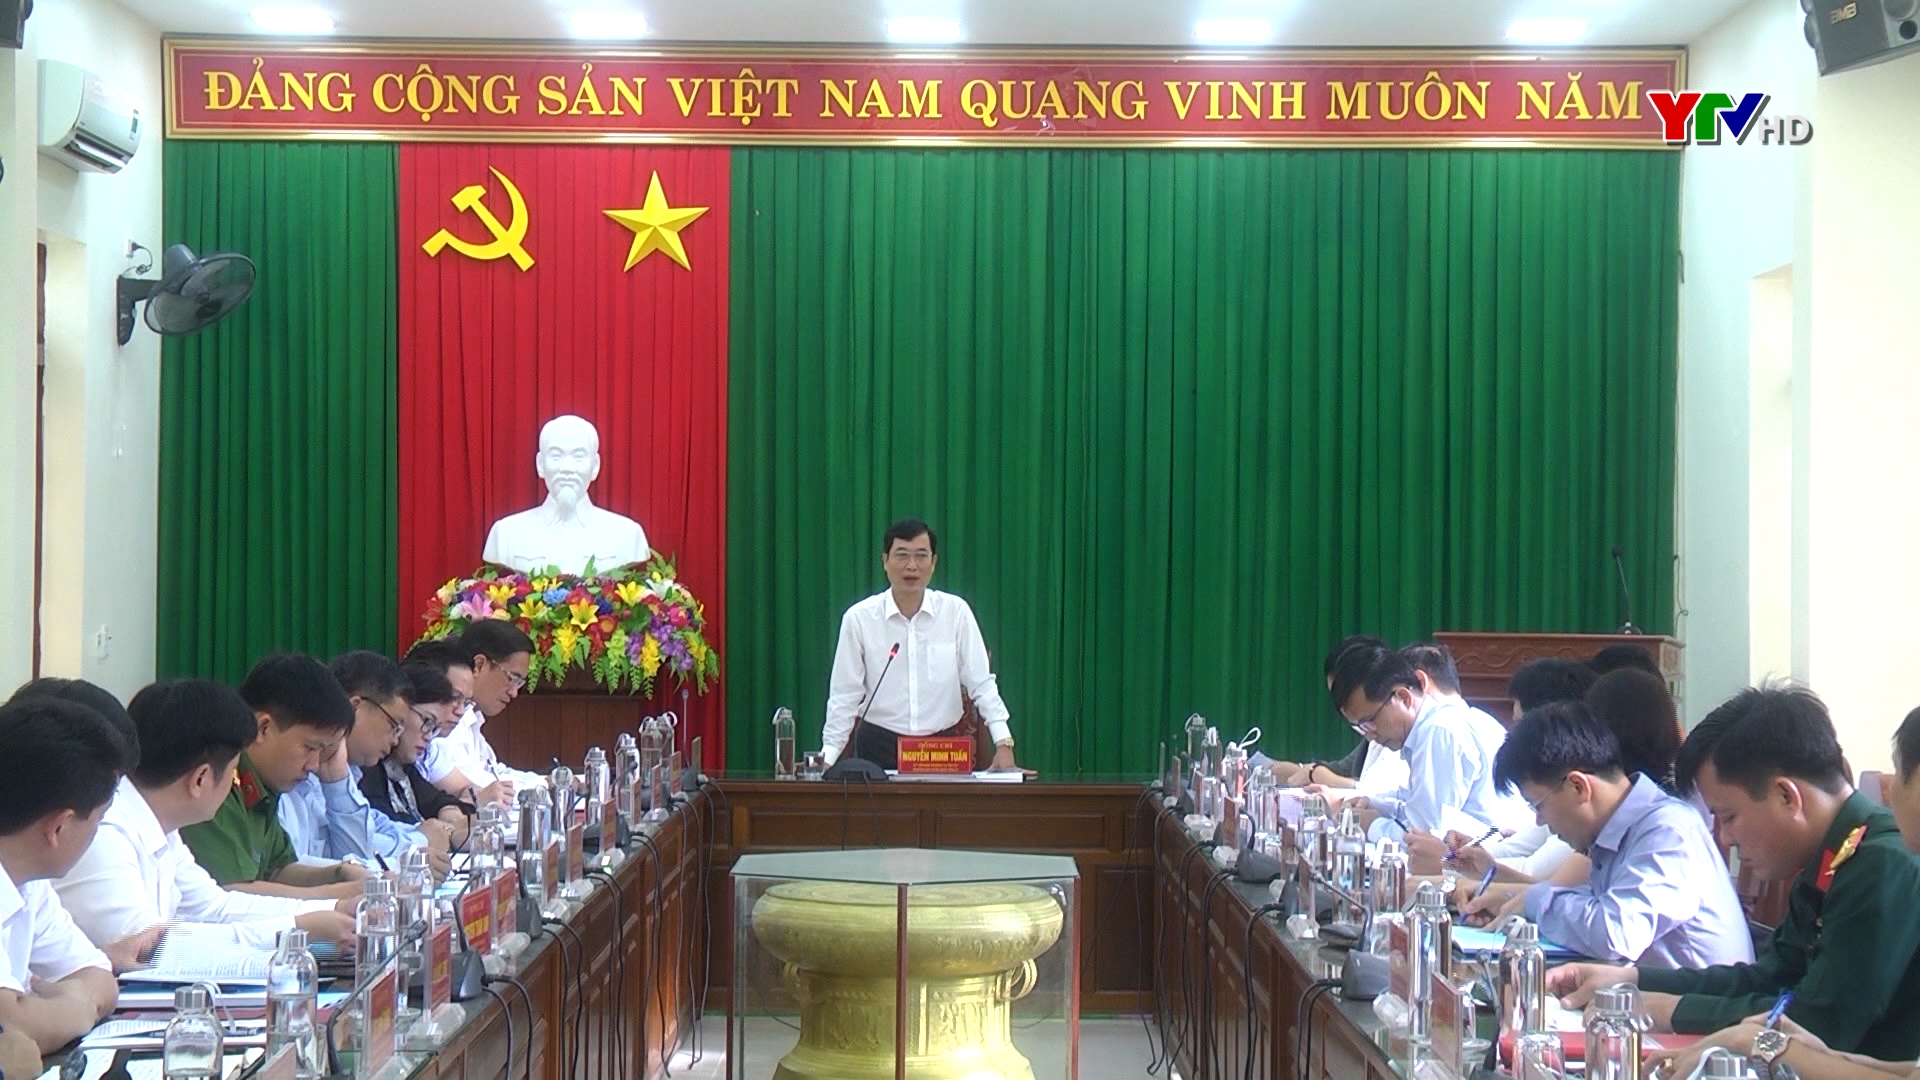 Đồng chí Nguyễn Minh Tuấn - Trưởng Ban Tuyên giáo Tỉnh ủy cùng đoàn công tác của tỉnh làm việc tại huyện Trấn Yên